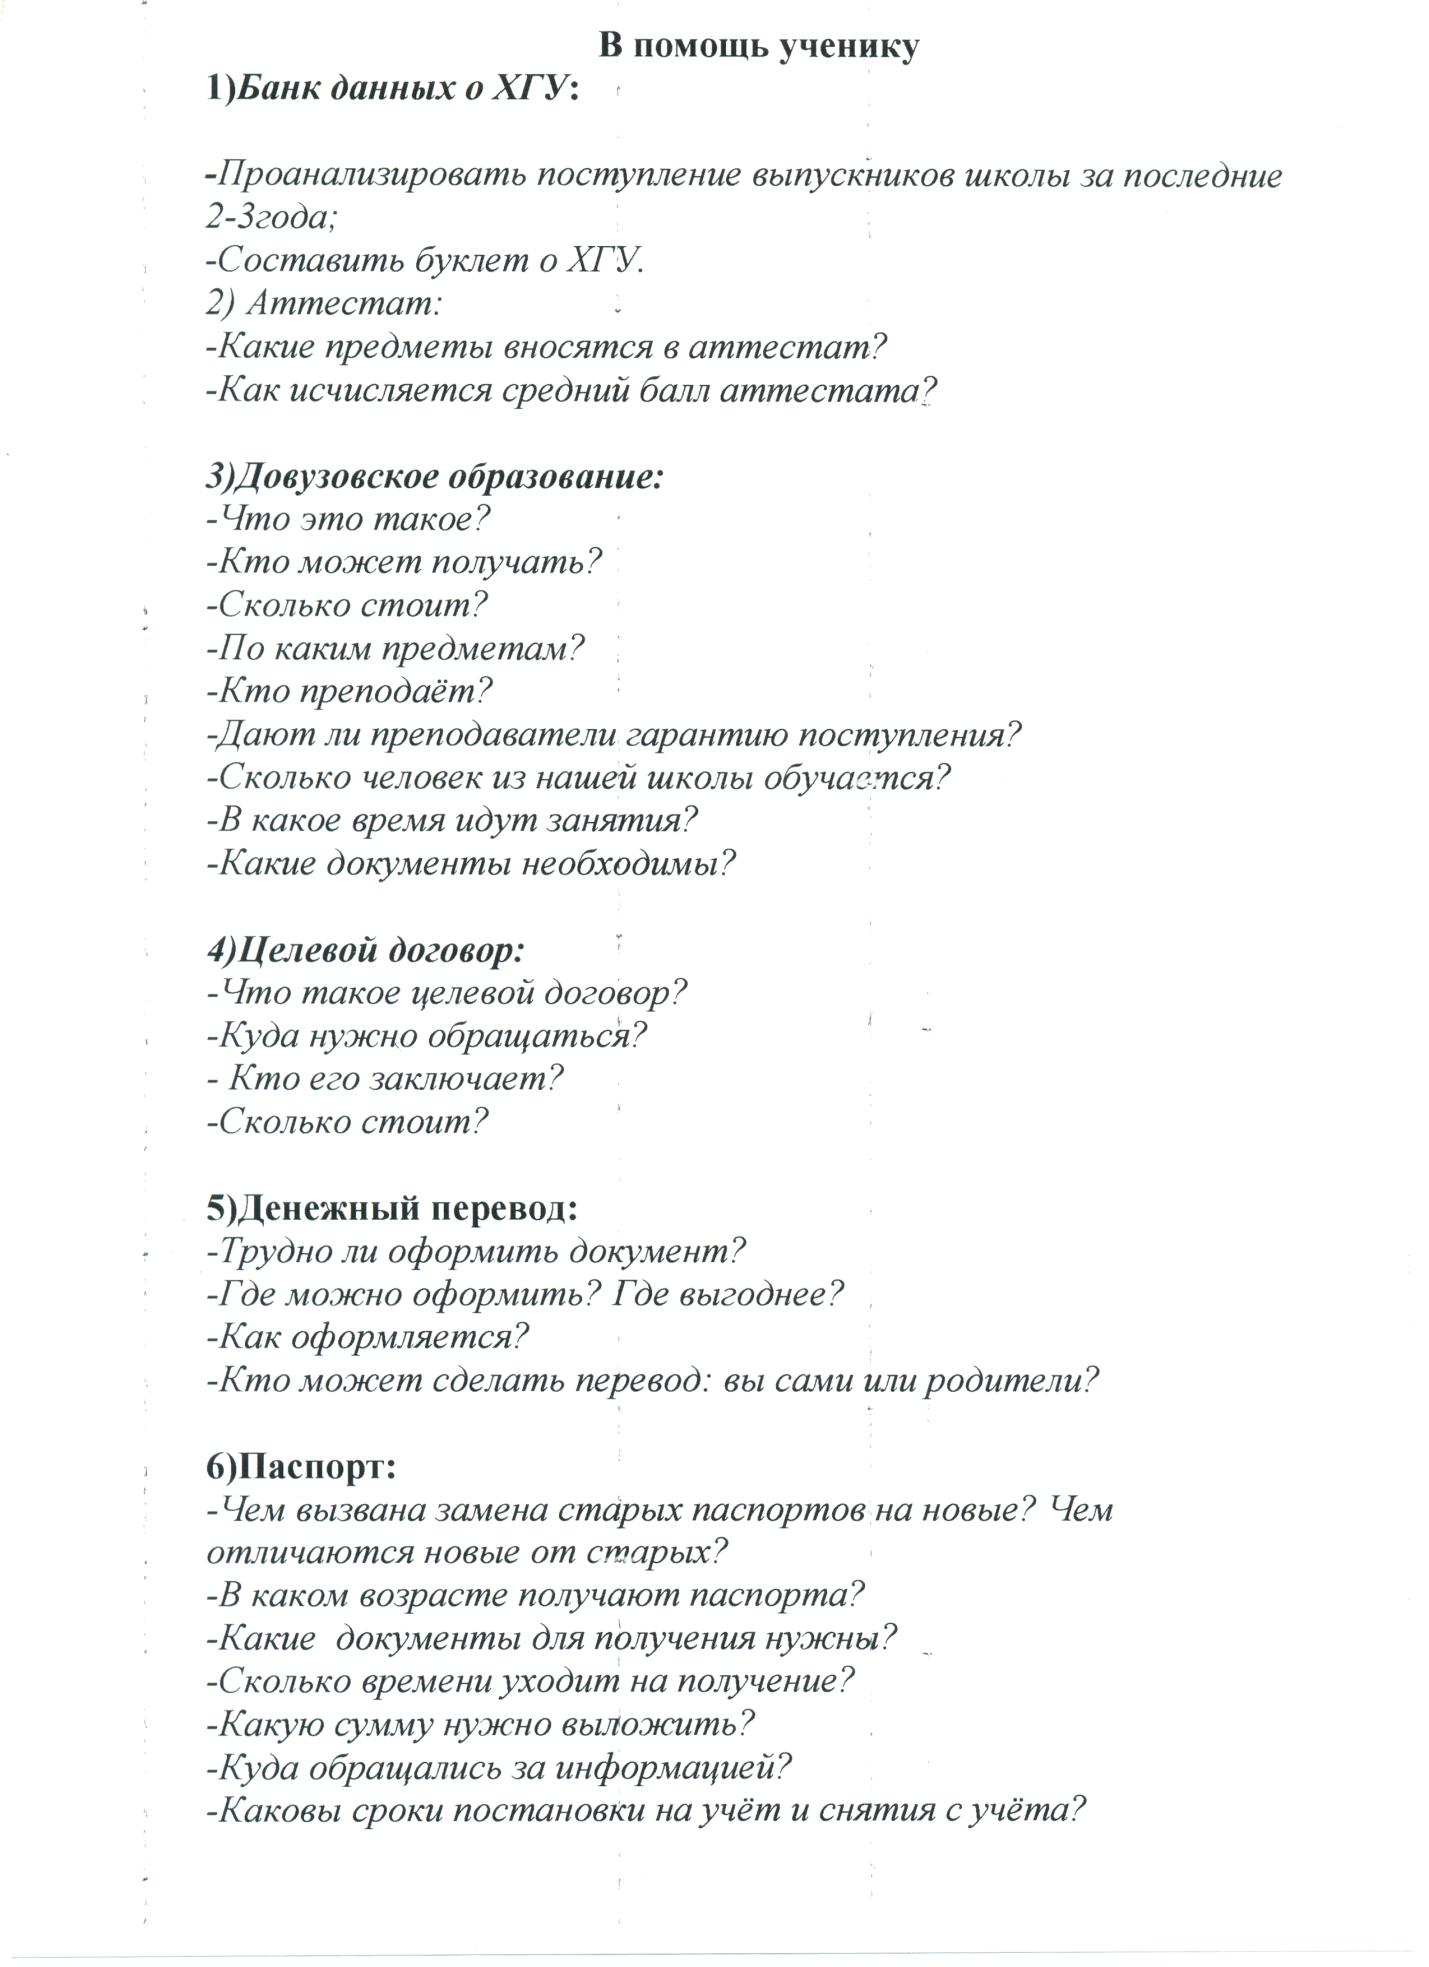 Урок русского языка в 10 классе по теме Официально - деловой стиль речи (проектная технология)